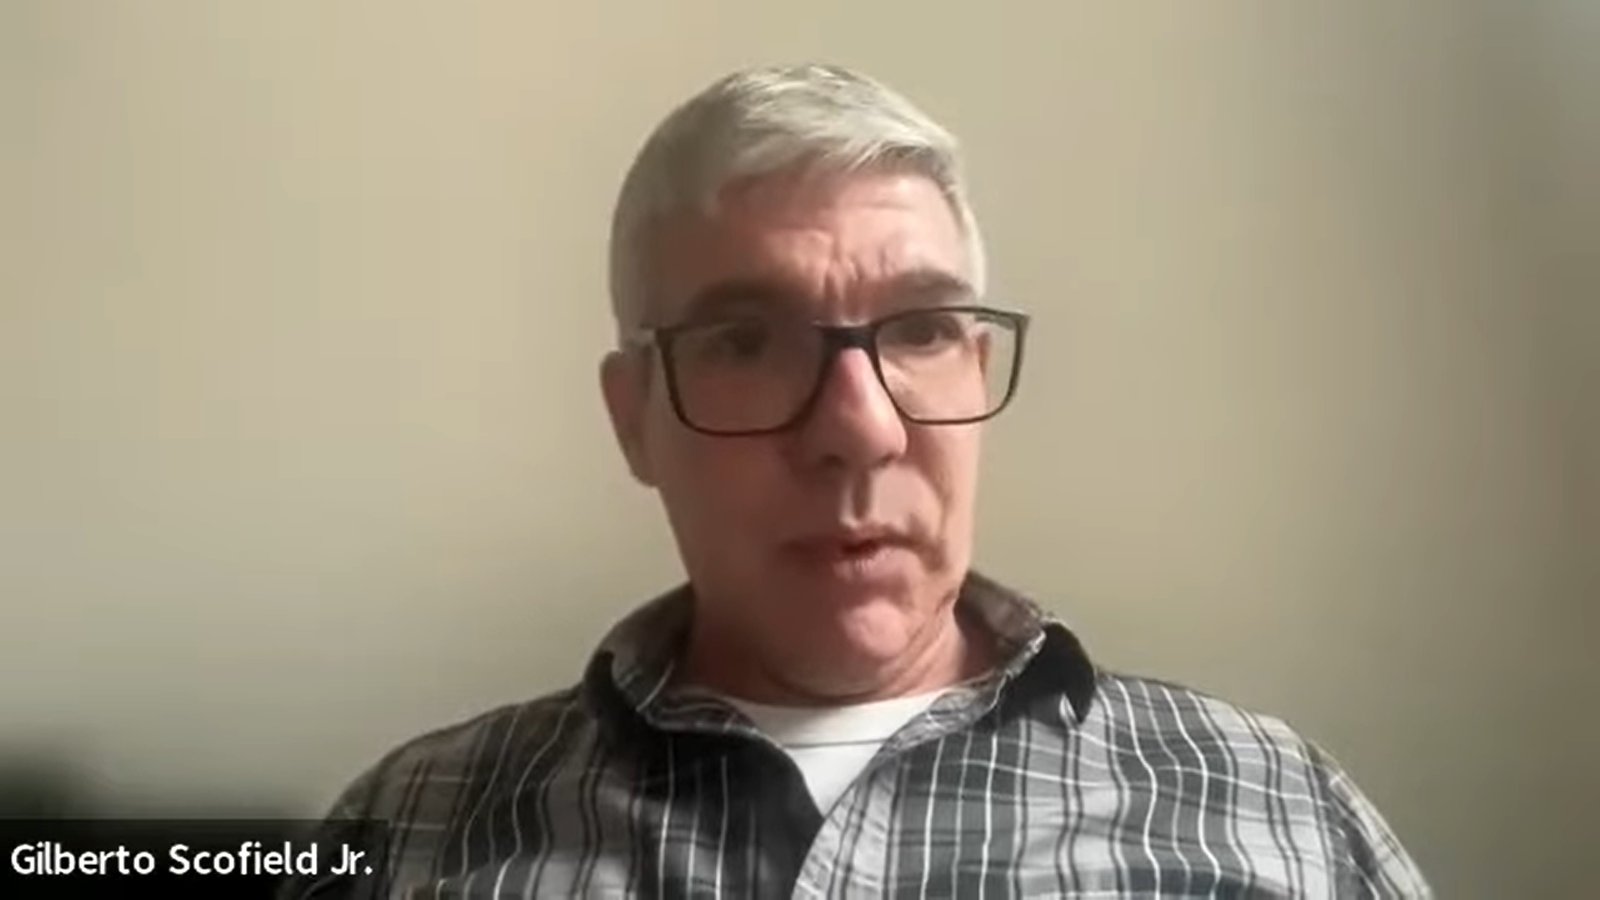 homem branco de cabelos grisalhos e blusa xadres usa oculos de aro marrom Gilberto Scofield Jr. fala de jornalismo empreendedor no Café comAner de 4 de julho de 2023